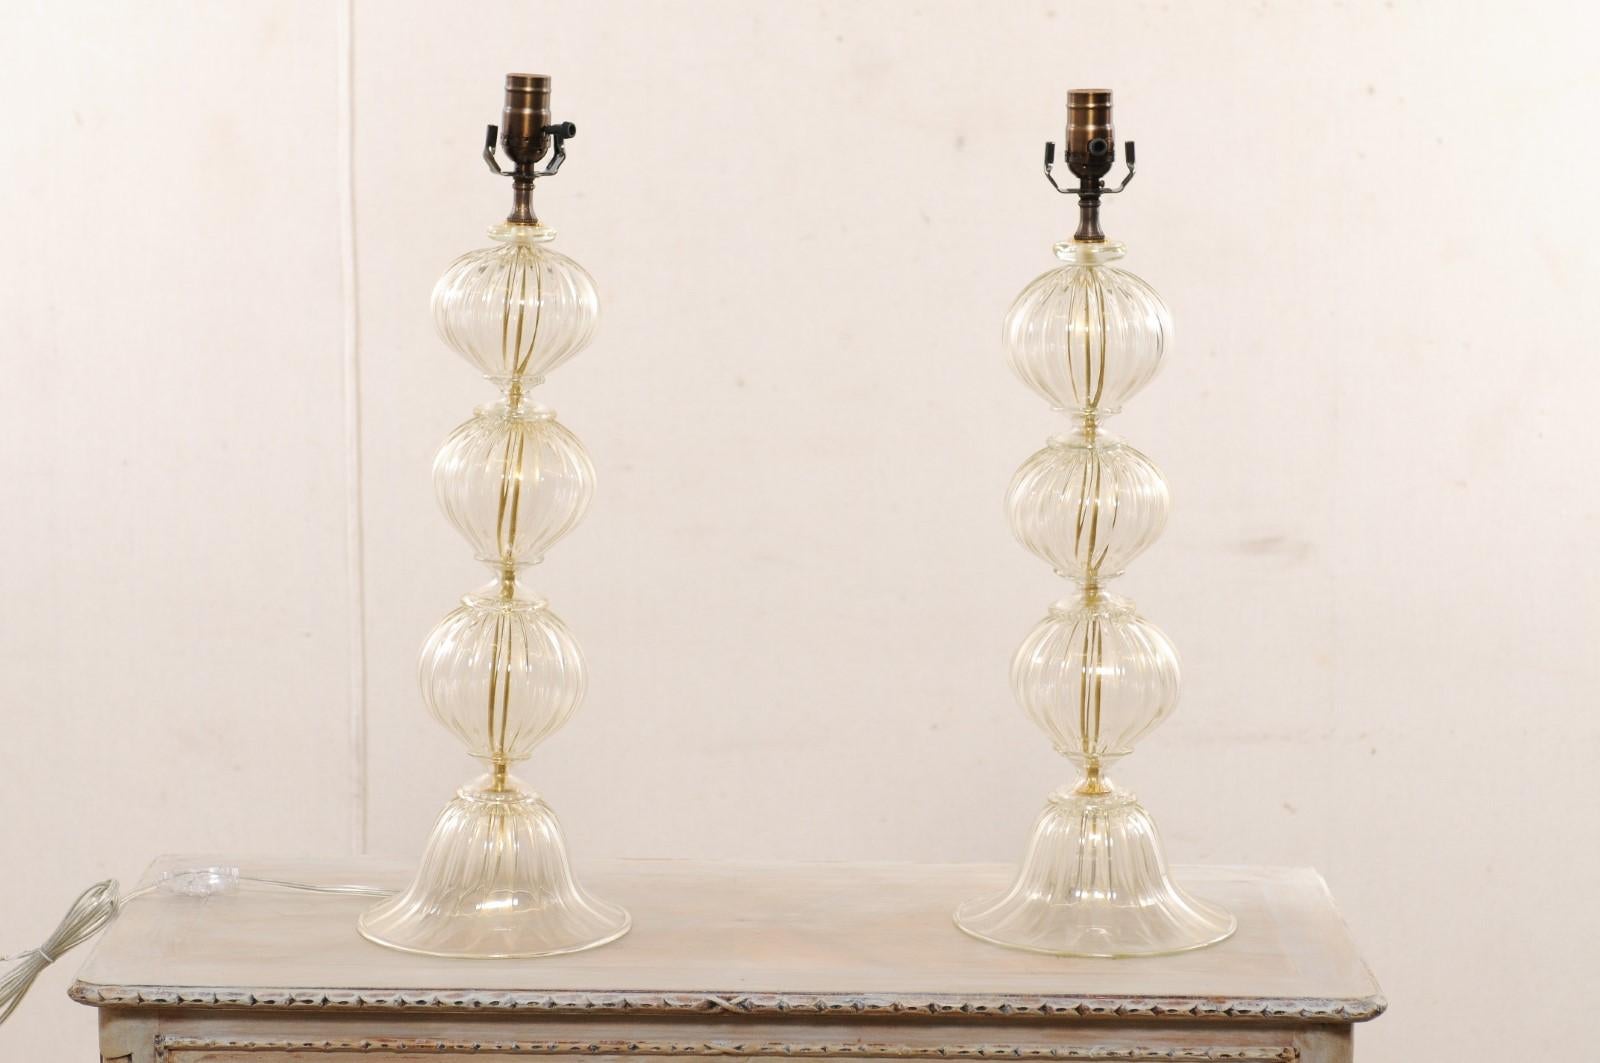 Ein italienisches Paar mundgeblasener Muranoglas-Tischlampen. Diese klassisch gestalteten italienischen Tischlampen wurden von erfahrenen Glasmeistern auf der venezianischen Insel Murano, Italien, hergestellt und zeichnen sich durch eine wunderschön